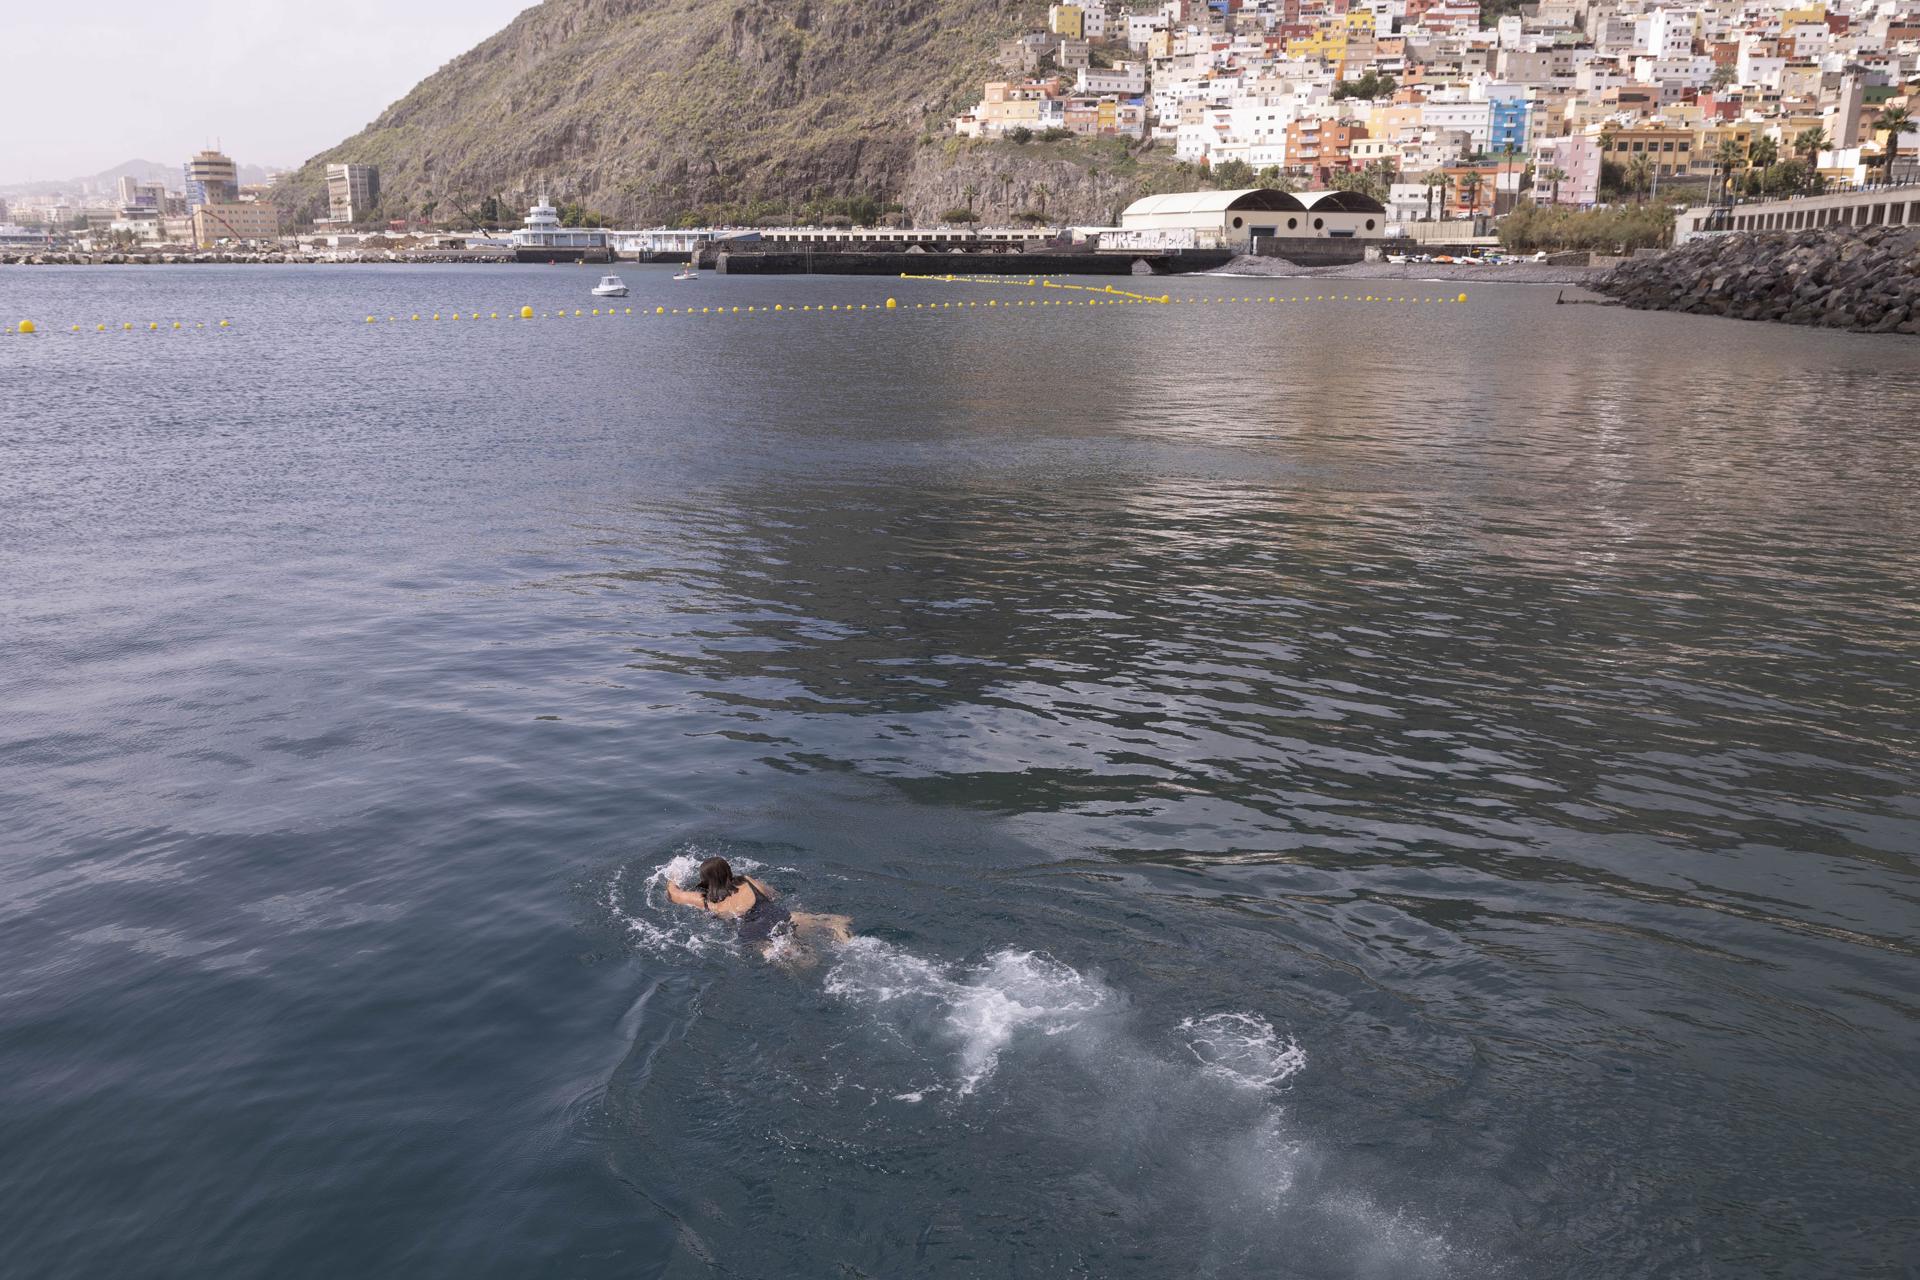 Una señora se da un baño en la zona denominada Acapulco el Bloque, situado en el litoral de Valleseco, área cedida este miércoles por la Autoridad Portuaria de Santa Cruz de Tenerife al Ayuntamiento de la capital. EFE/ Miguel Barreto